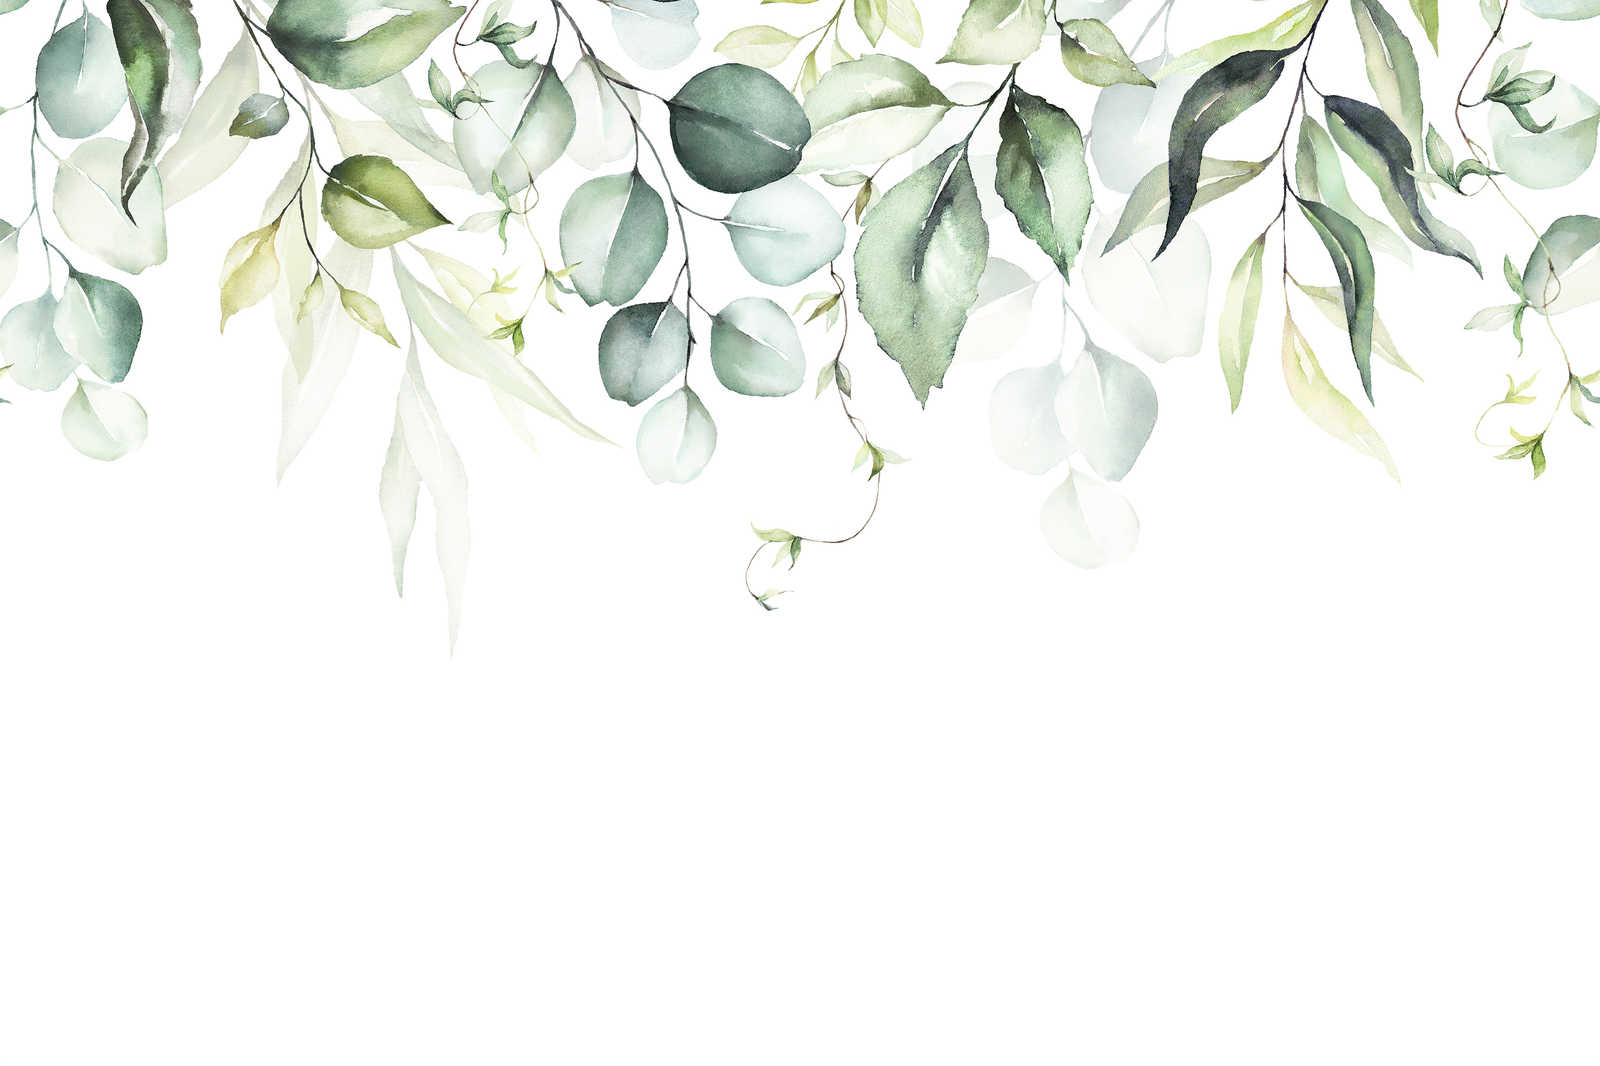             Cuadro en lienzo con zarcillos de hojas con aspecto de acuarela - 0,90 m x 0,60 m
        